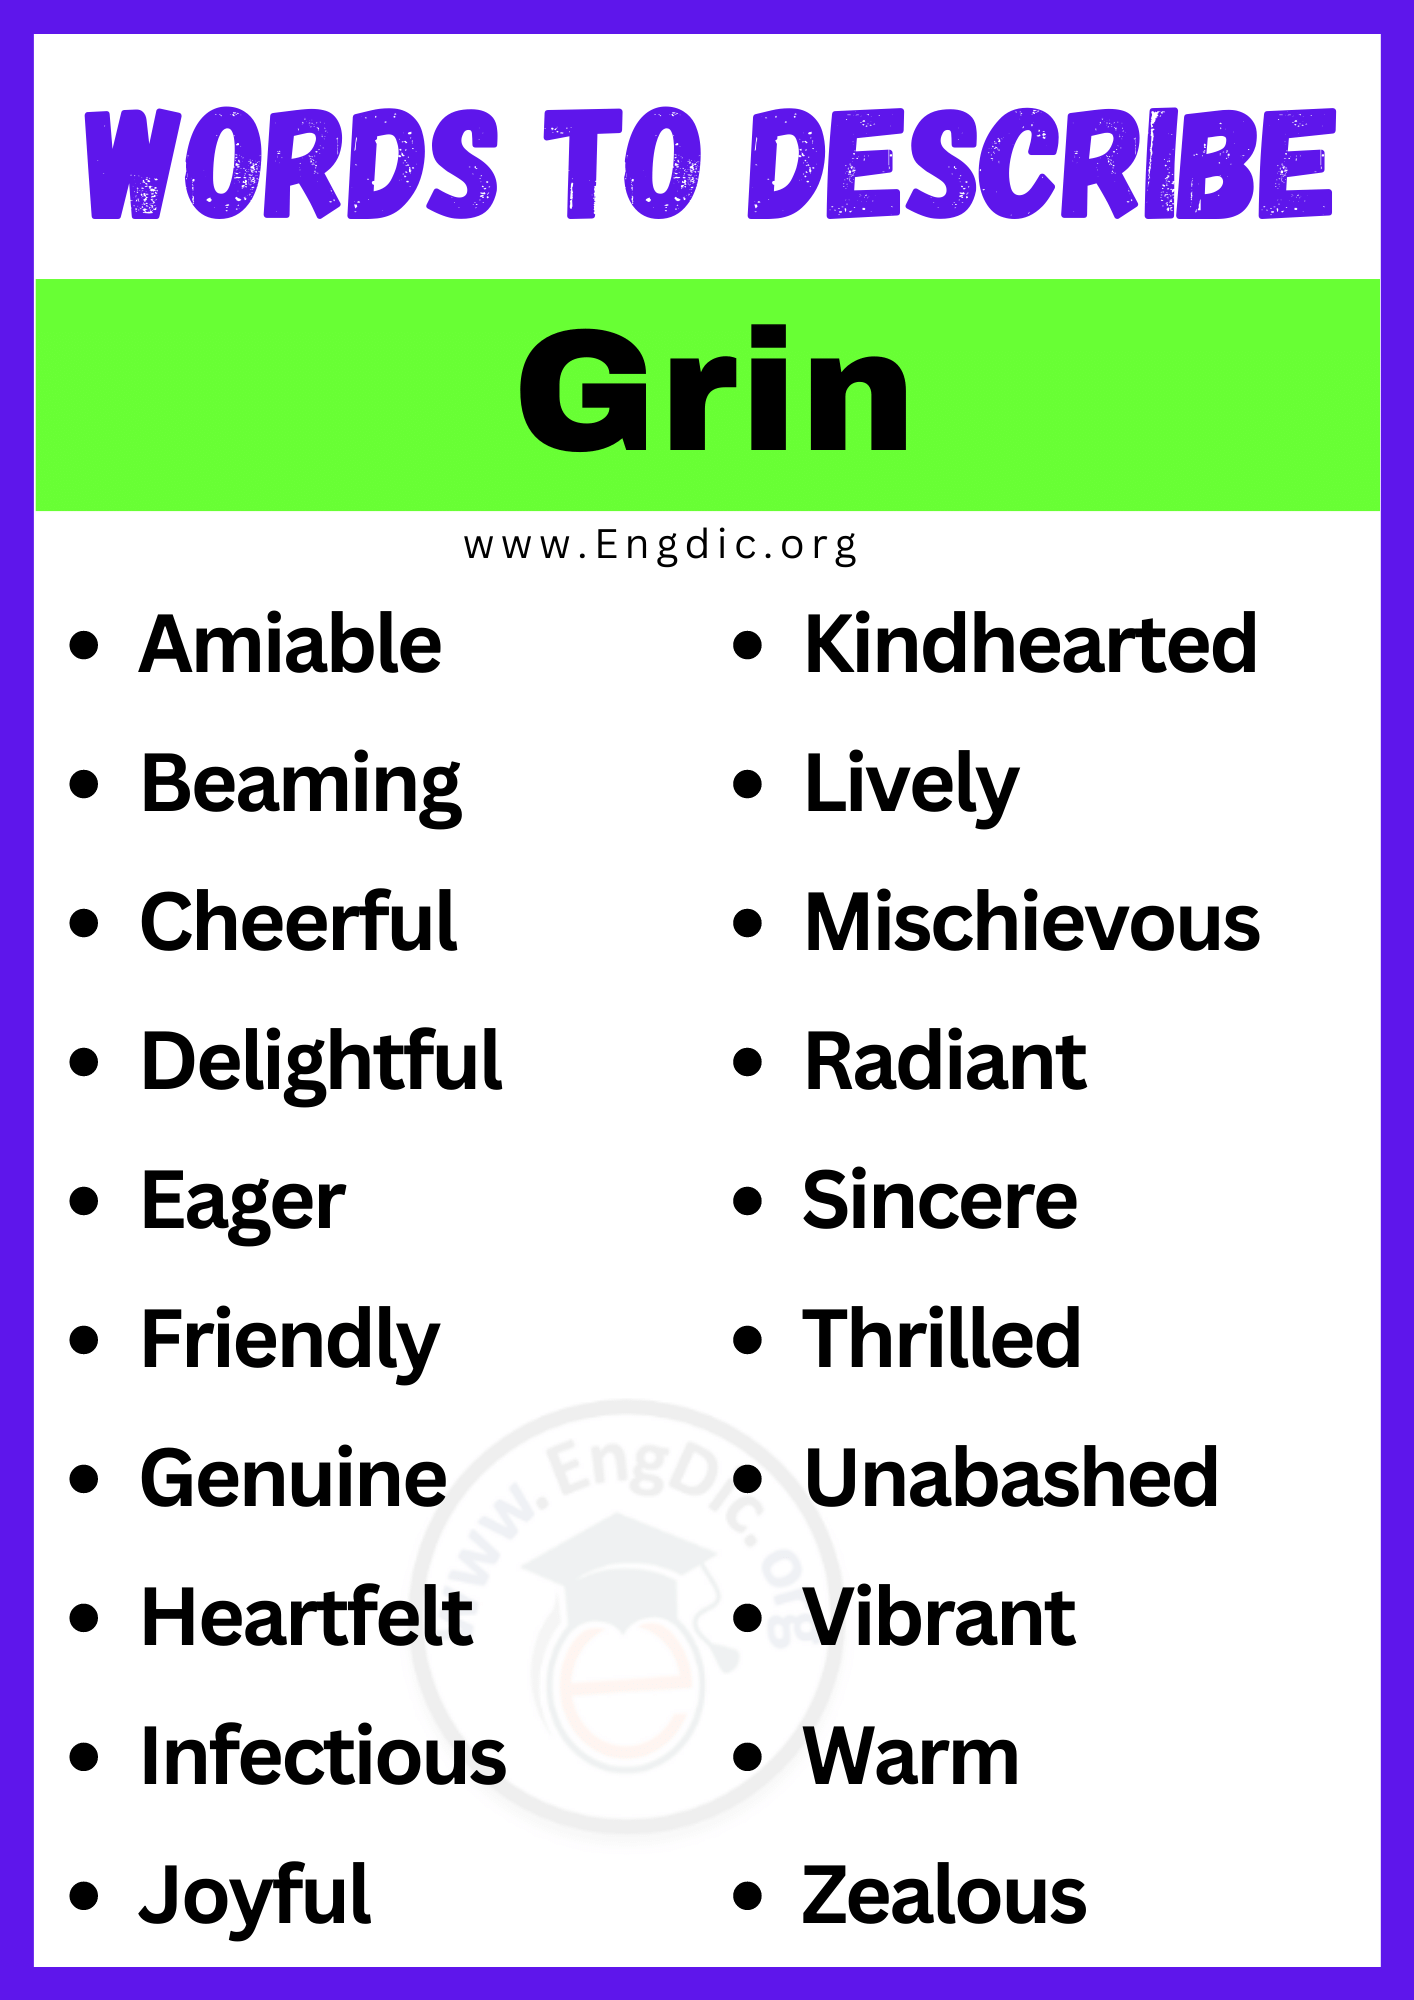 Words to Describe Grin